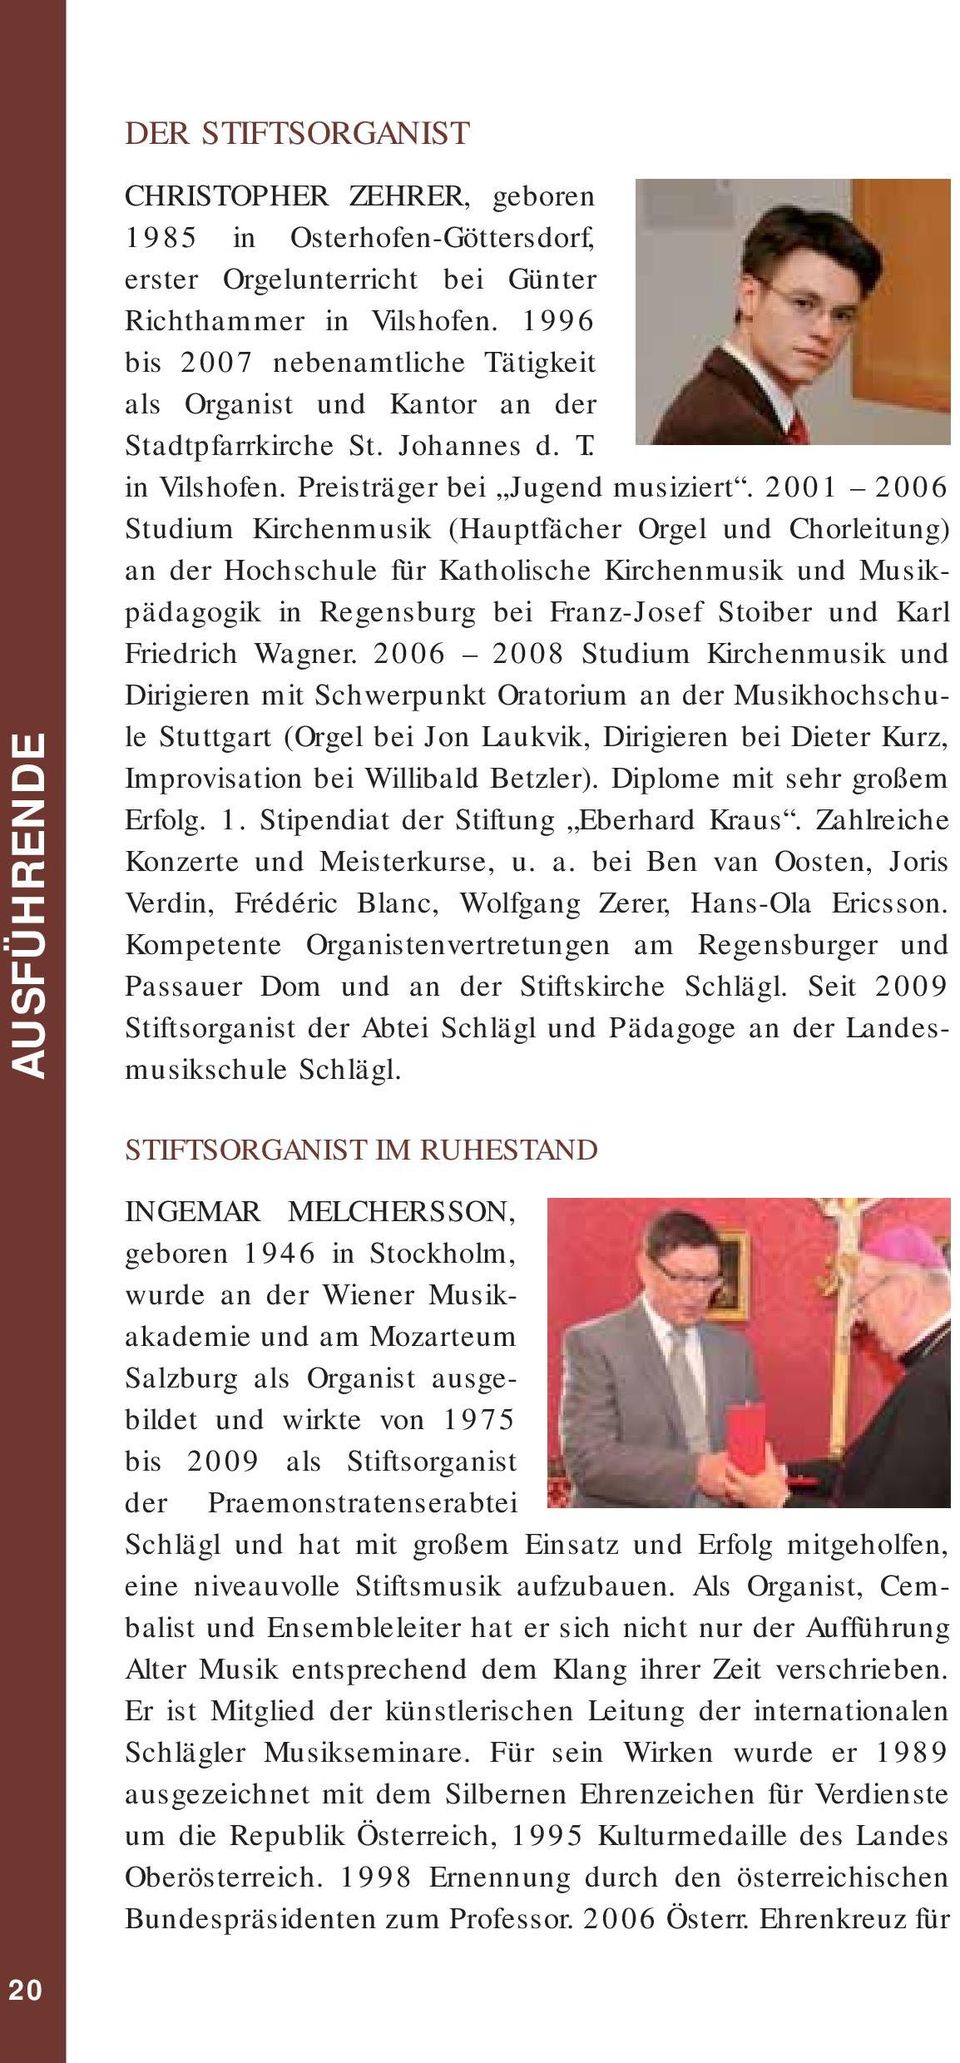 2001 2006 Studium Kirchenmusik (Hauptfächer Orgel und Chorleitung) an der Hochschule für Katholische Kirchenmusik und Musikpädagogik in Regensburg bei Franz-Josef Stoiber und Karl Friedrich Wagner.